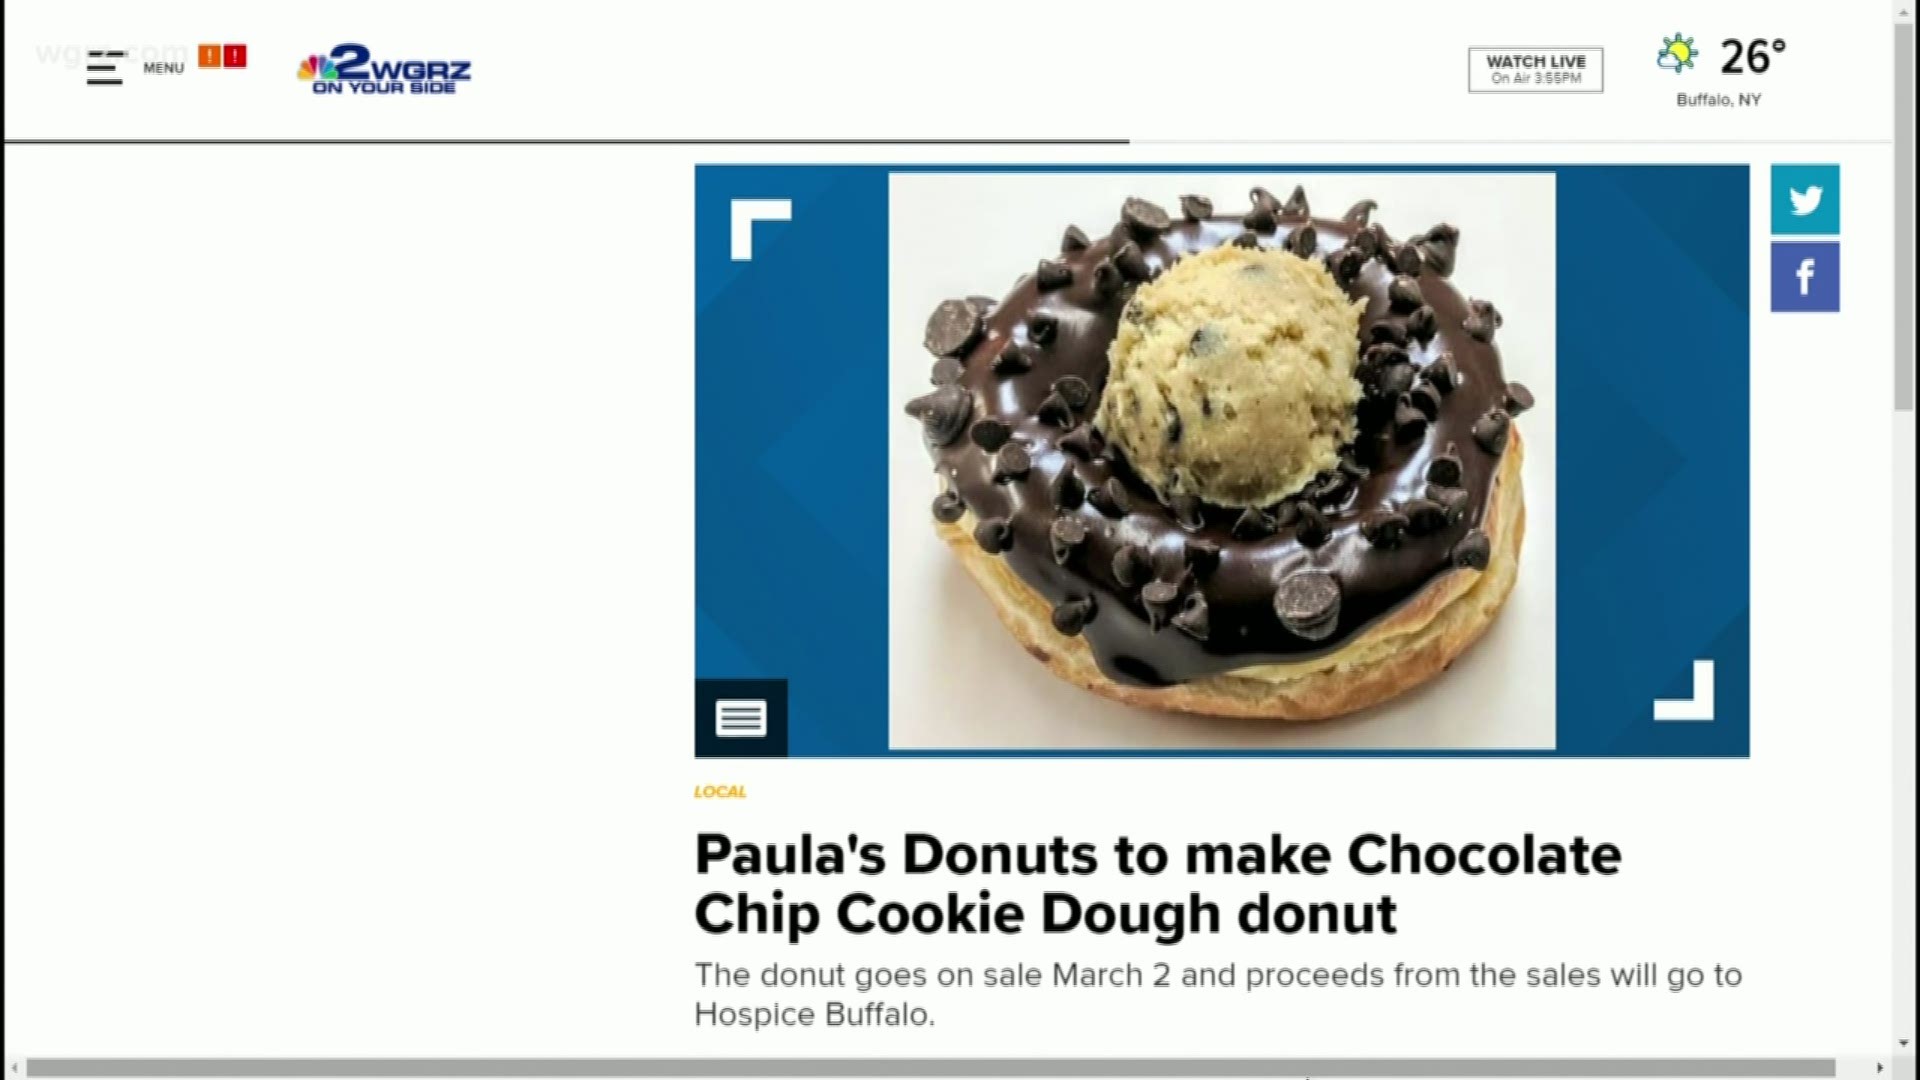 Paula's donuts new donut to benefit Hospice Buffalo